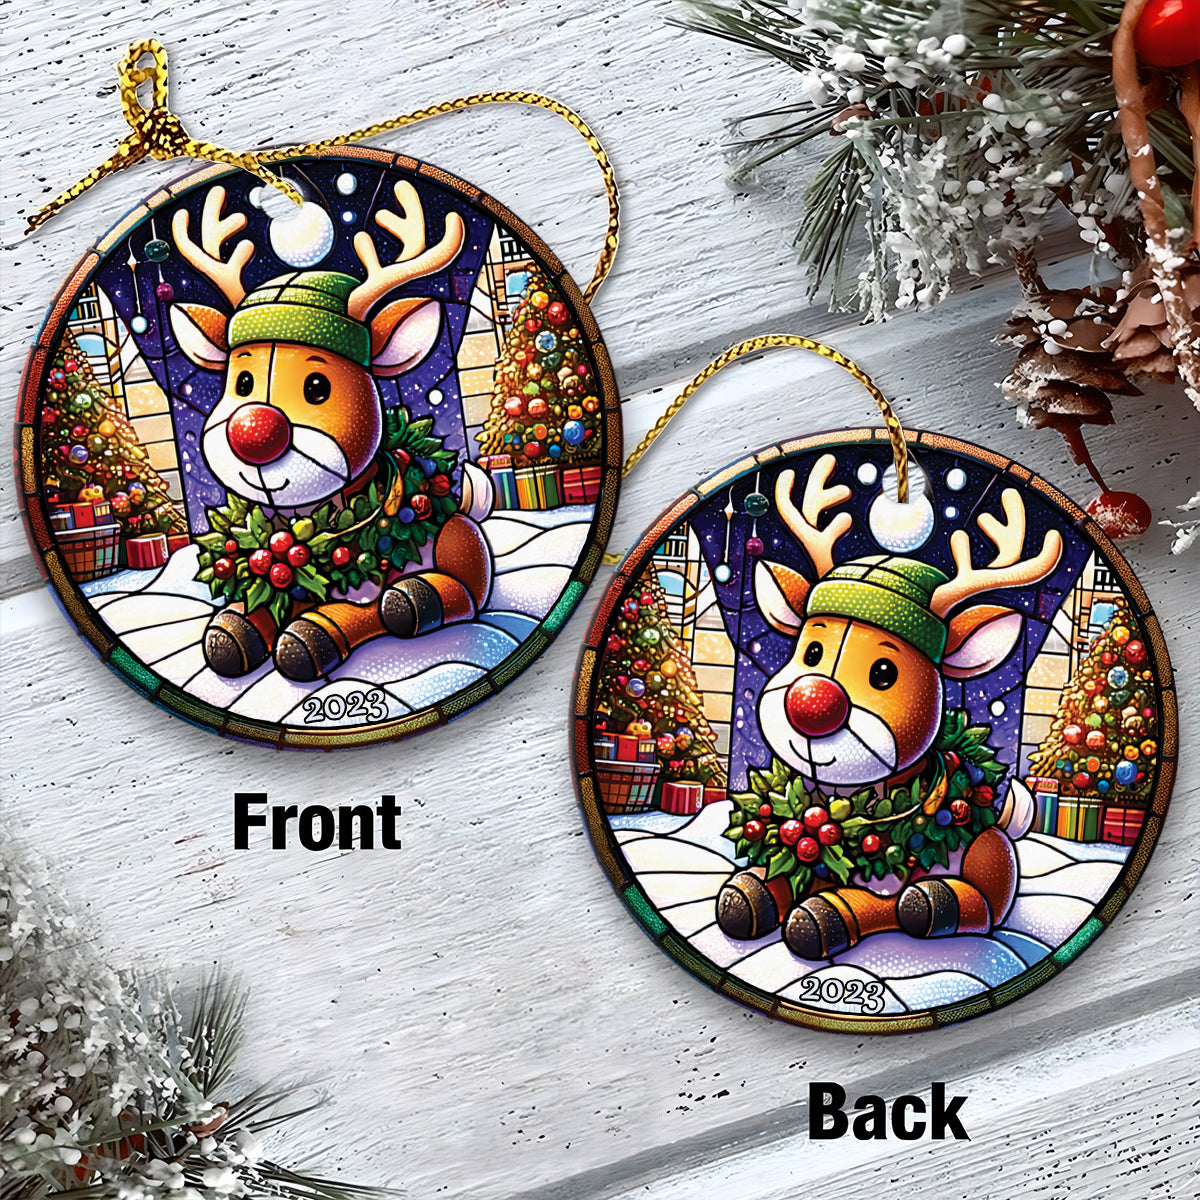 Rudolph Ceramic Christmas Ornament - Christmas 2023 Rudolph Circle Ceramic Ornament, Gift For Christmas, Holiday Decor